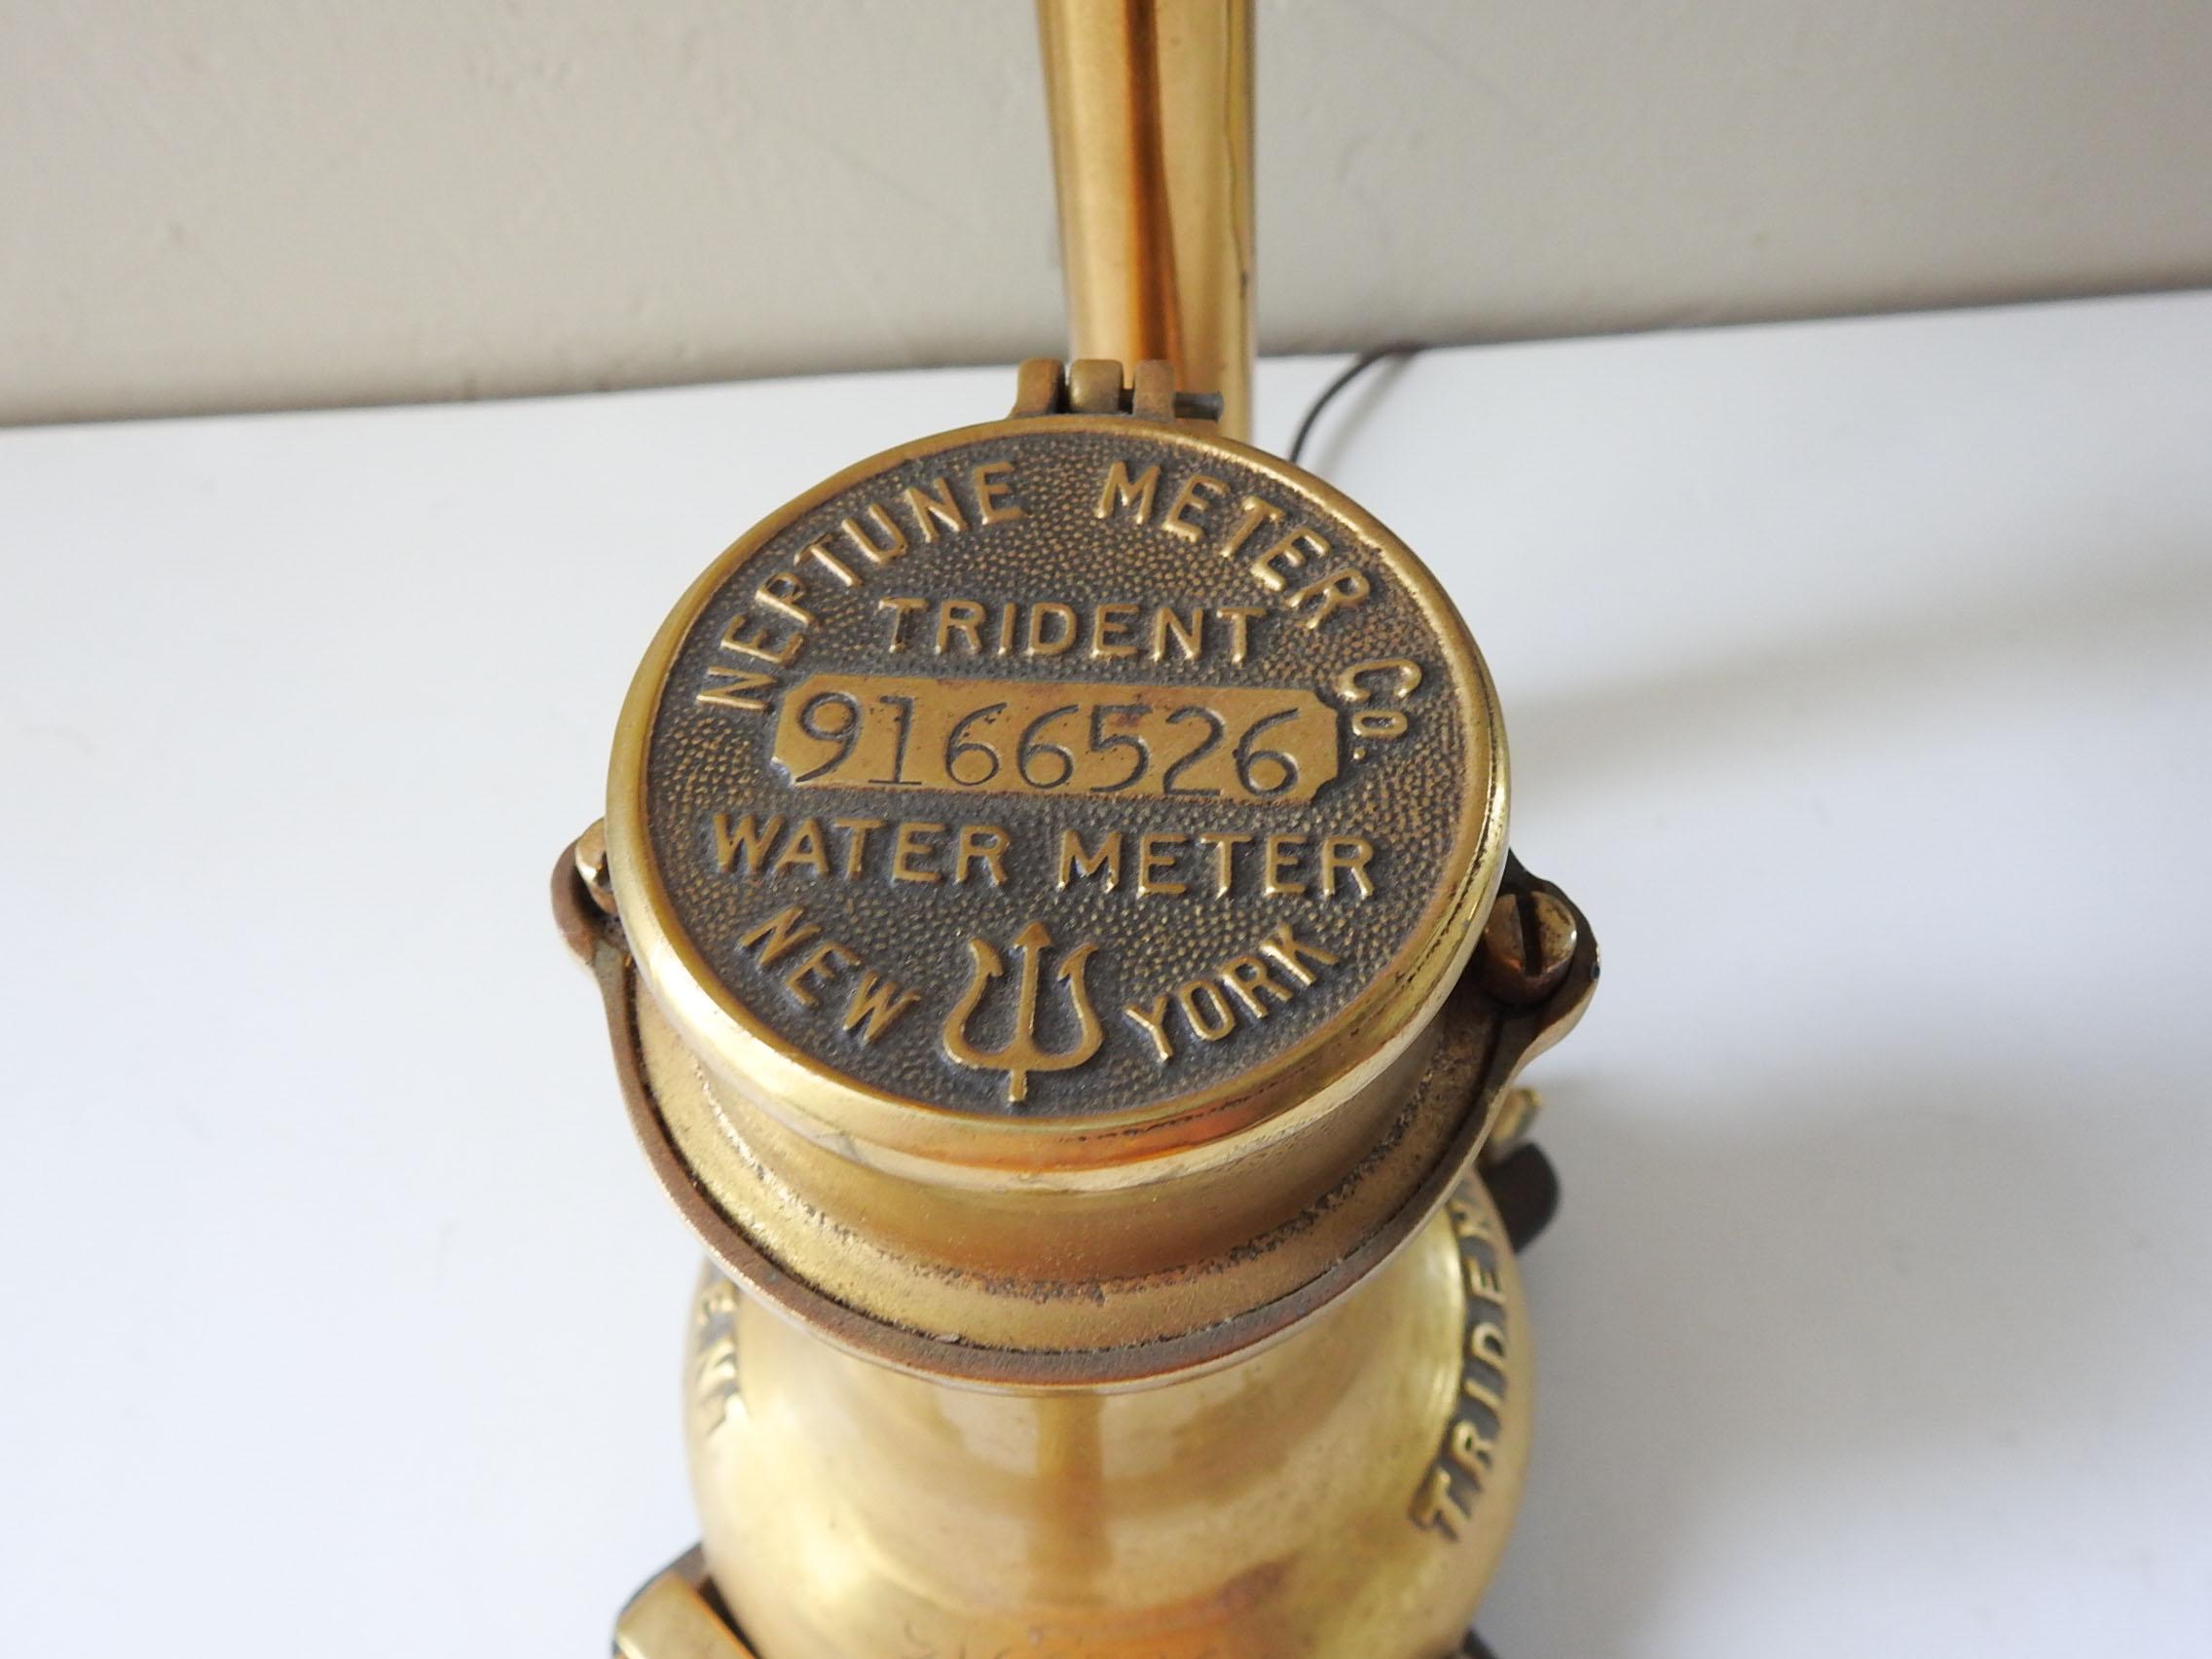 Tischlampe aus antikem Wasserzähler und Rohr aus Messing.  New York Neptune Trident Meter, Standard-Glühbirne, kommt mit Edison Stil blub.  Hat eine ziemlich kurze Kordel, etwa 40